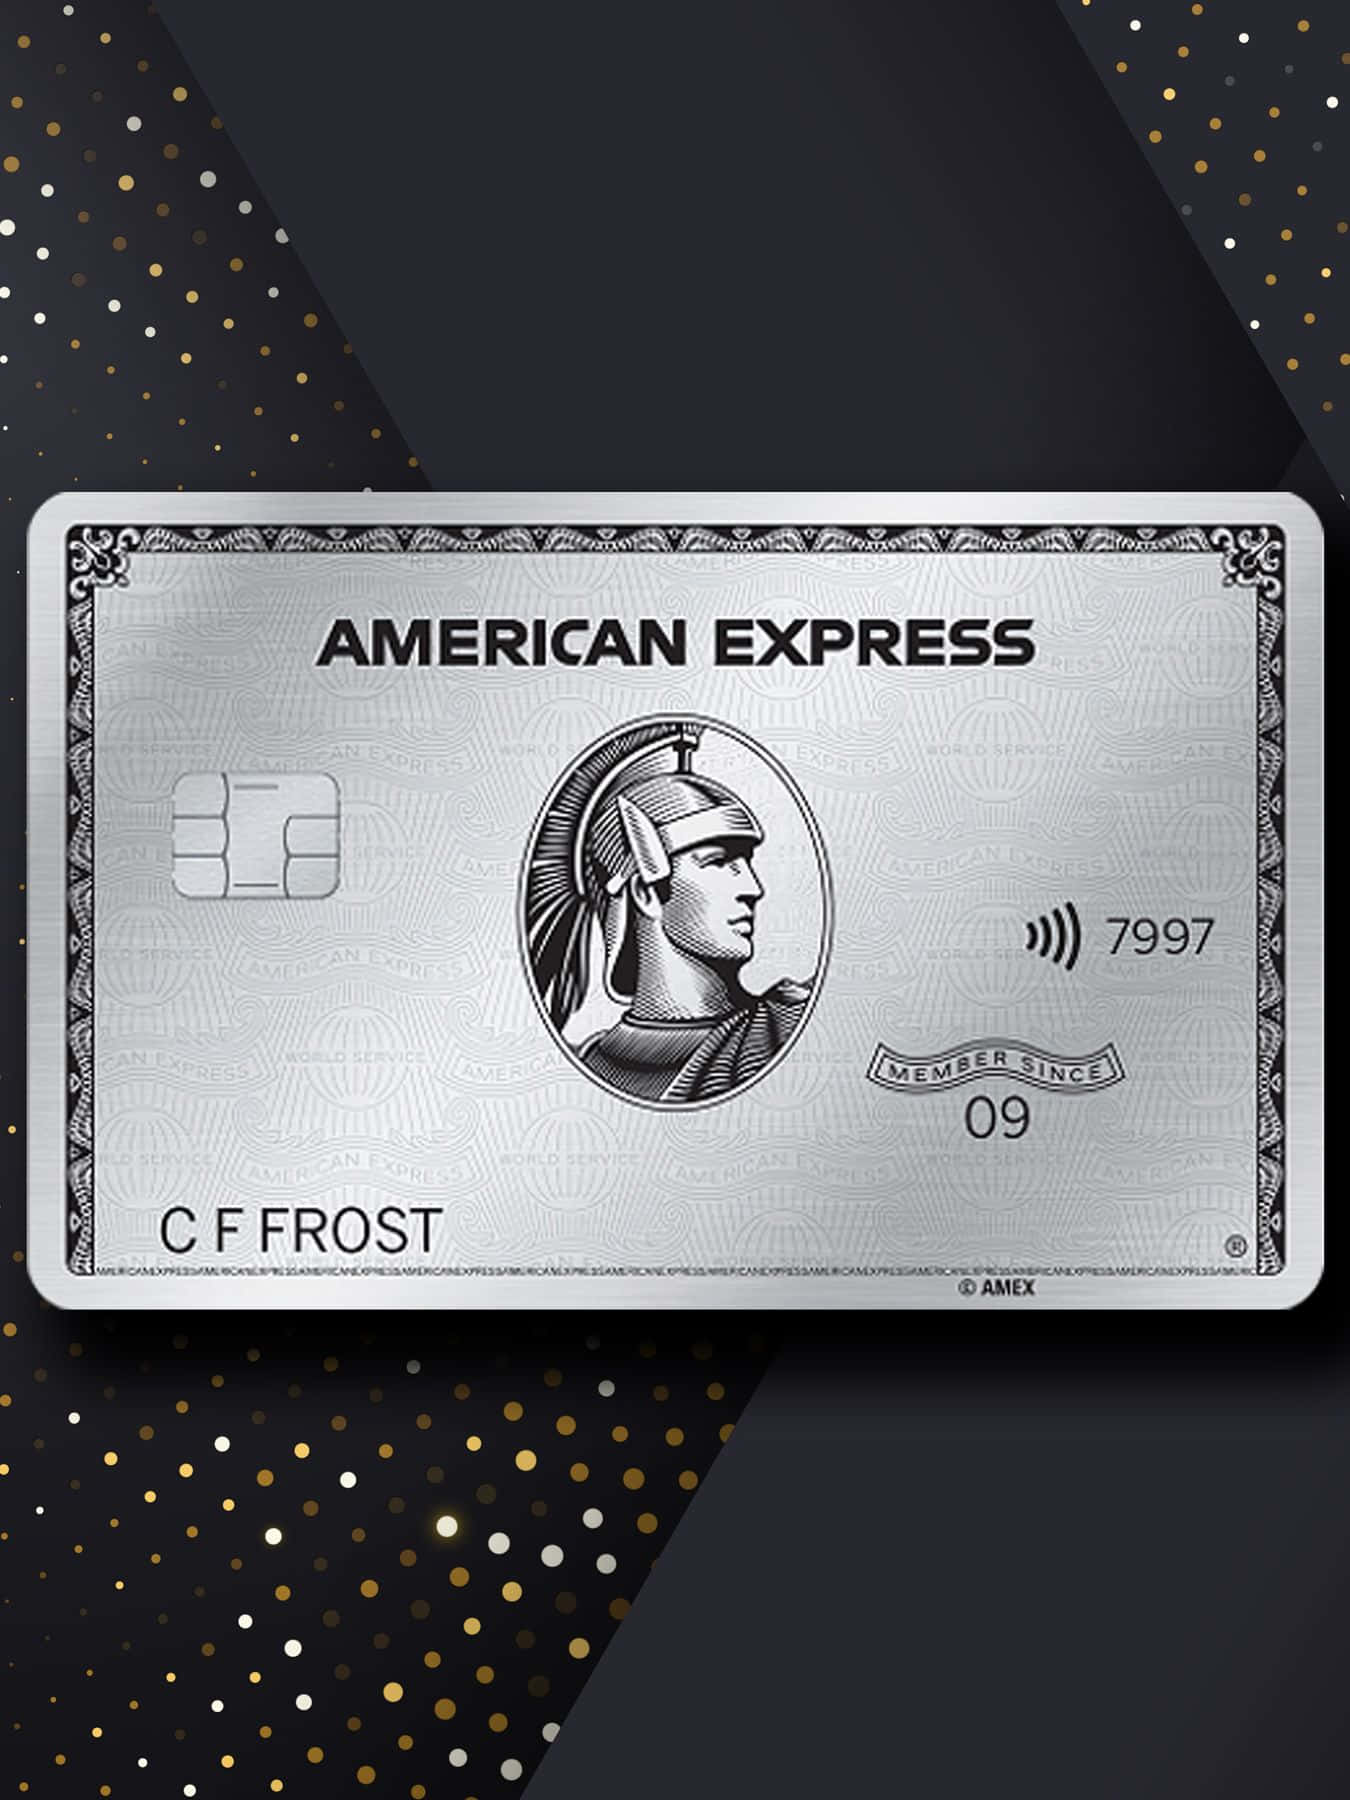 Graziedi Aver Scelto American Express. Esplora I Vantaggi Di American Express E Scopri L'esperienza Unica Che Offriamo.